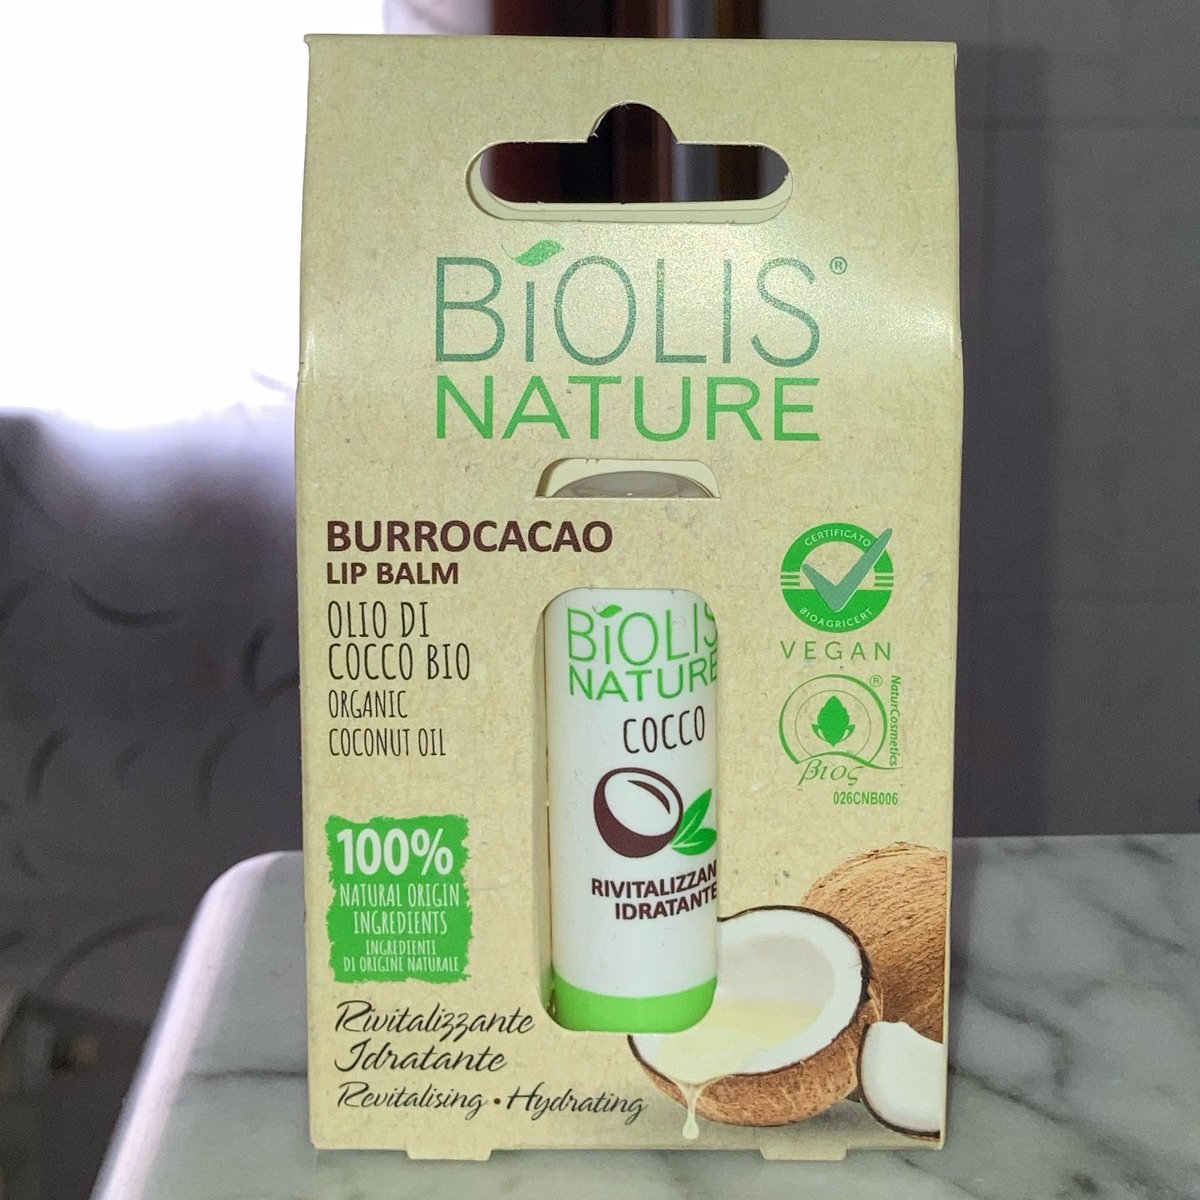 Biolis Nature burrocacao olio di cocco bio Reviews | abillion